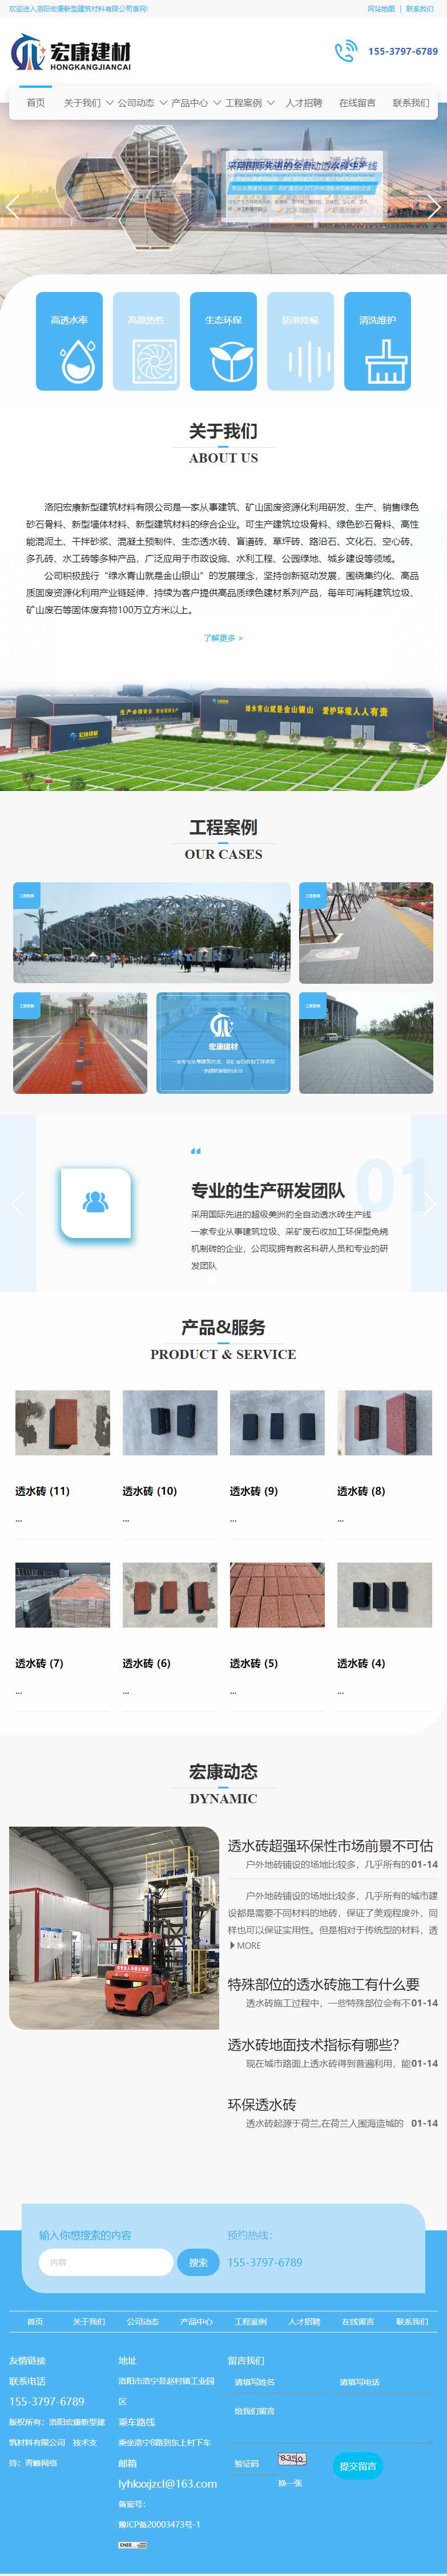 洛阳宏康新型建筑材料有限公司网站案例